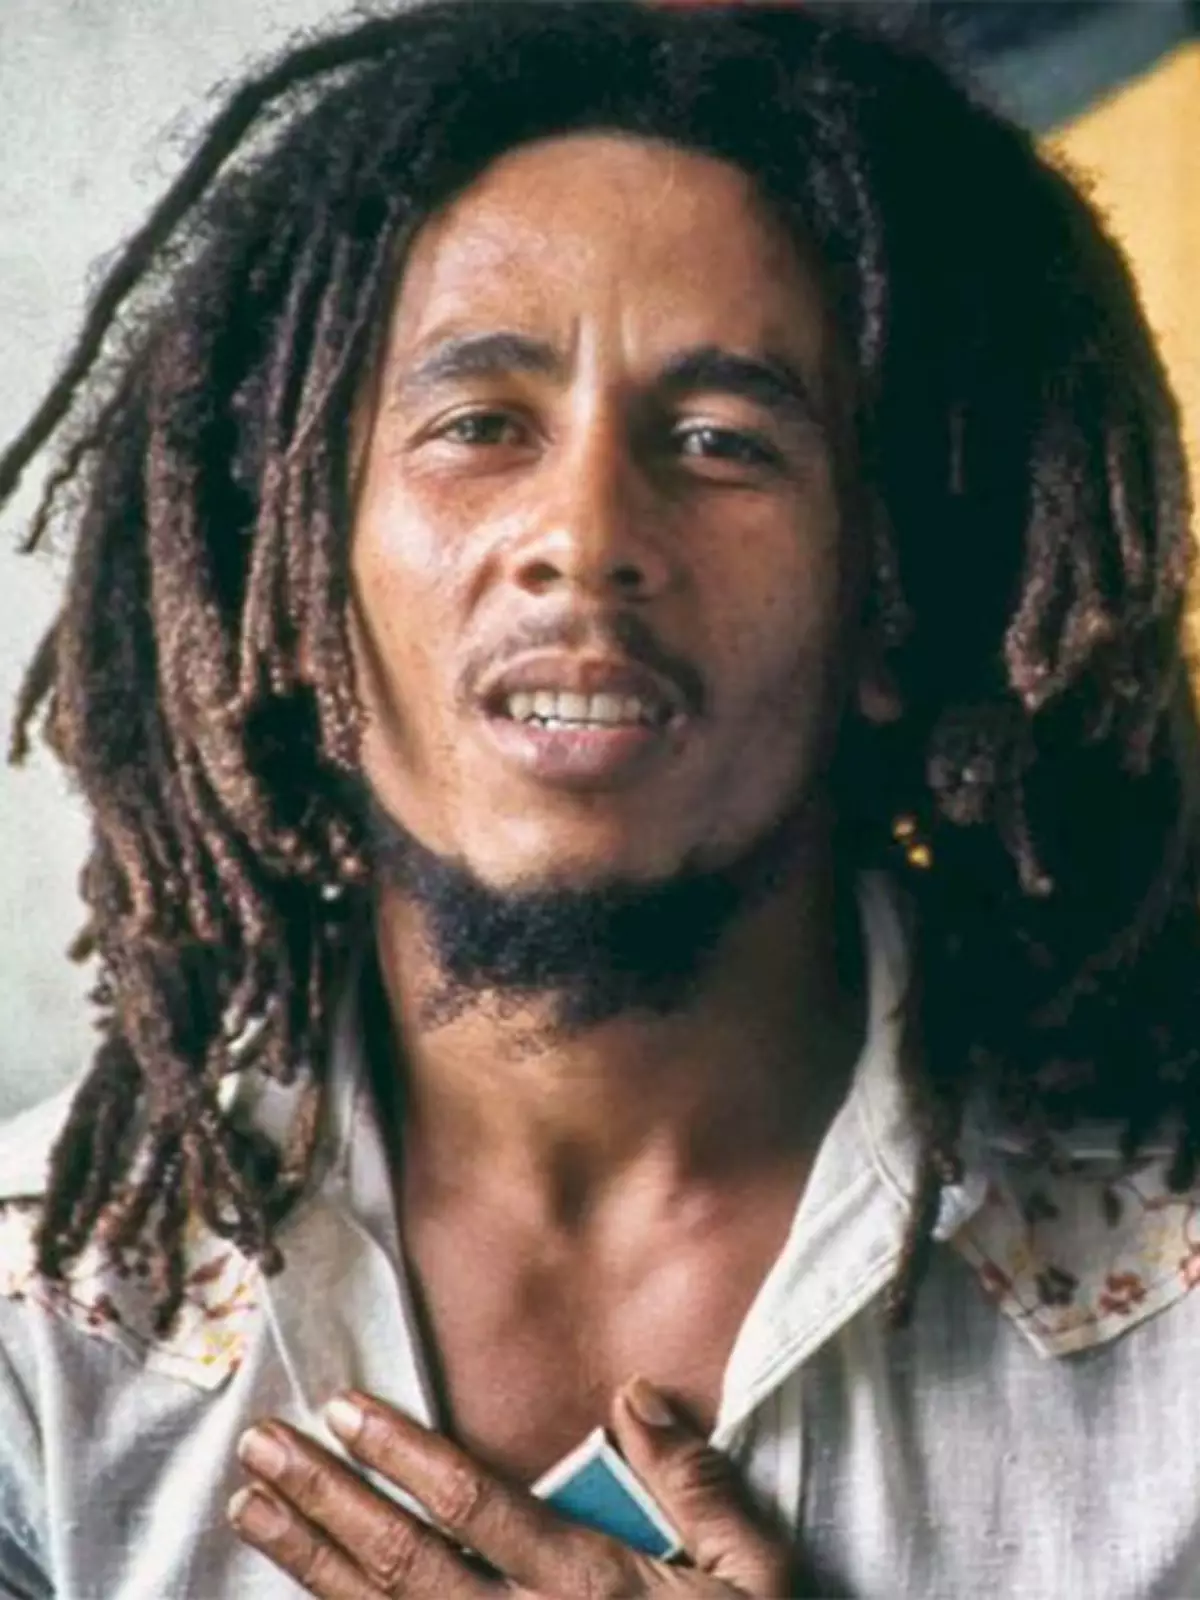 Bob Marley: One Love, cinebiografia de lenda do reggae, ganha nova data e  trailer